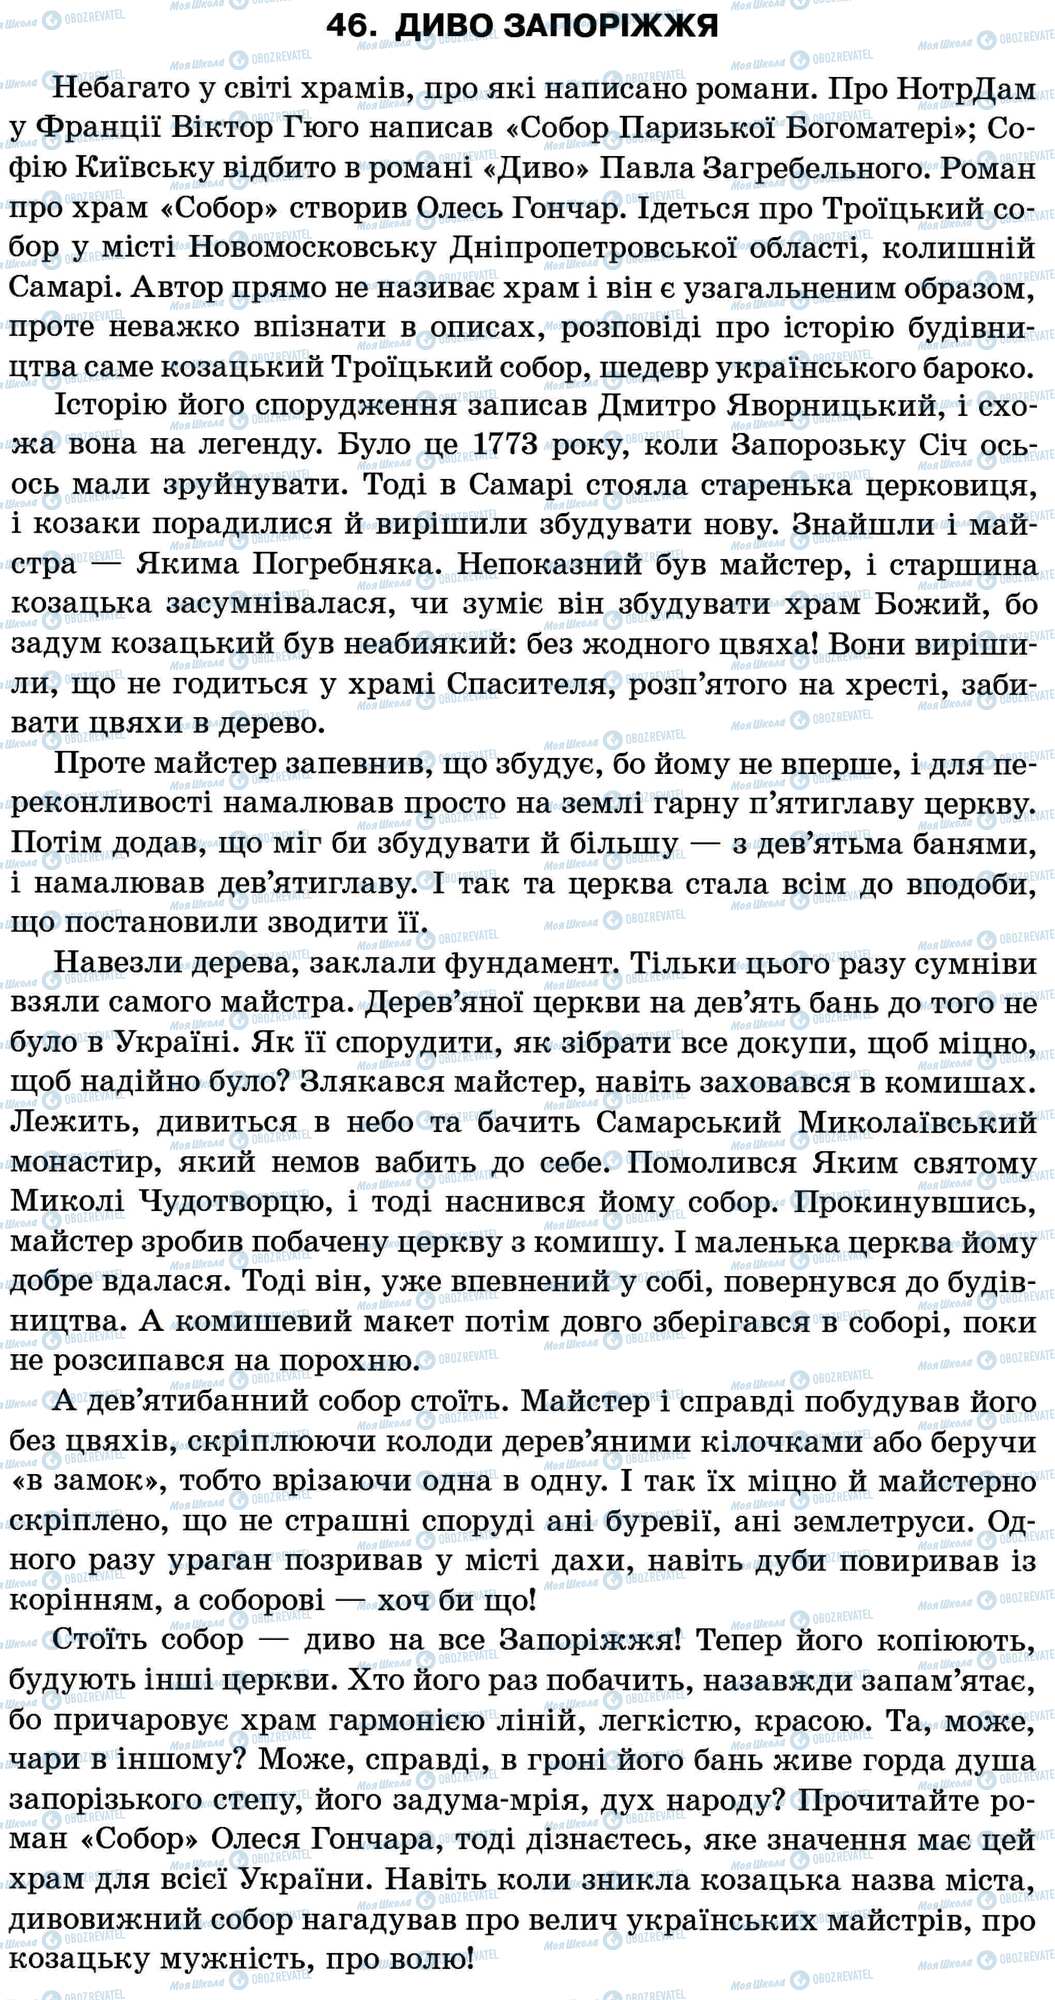 ДПА Укр мова 11 класс страница 46. Диво Запоріжжя